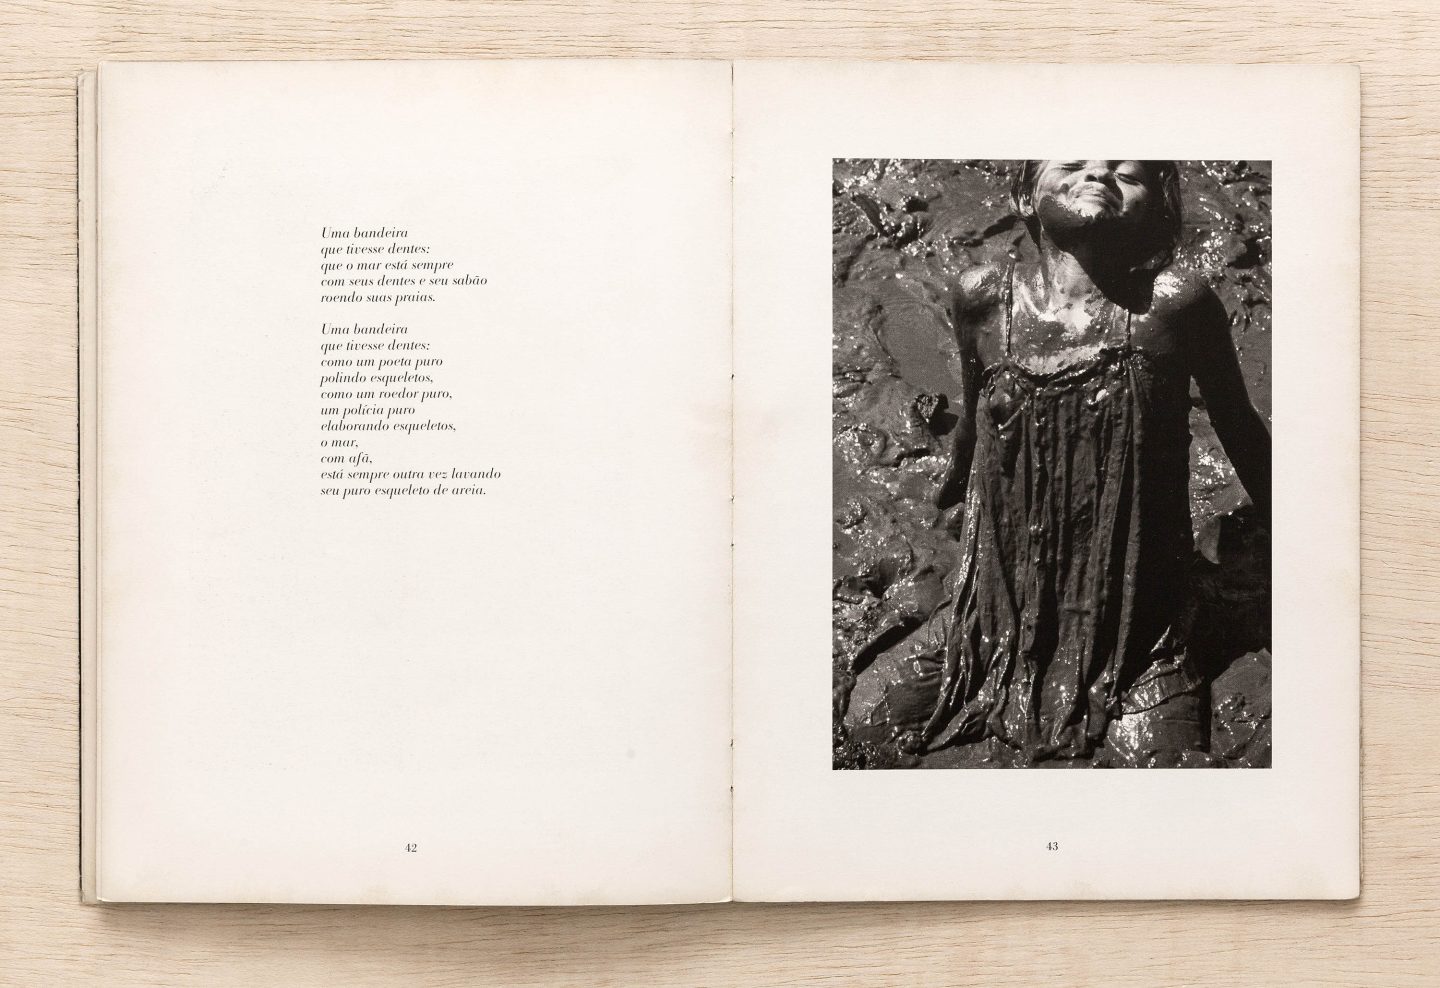 Livro aberto, na página esquerda um poema impresso e, na página direita, uma fotografia em preto e branco de uma menina tomando um banho de lama.